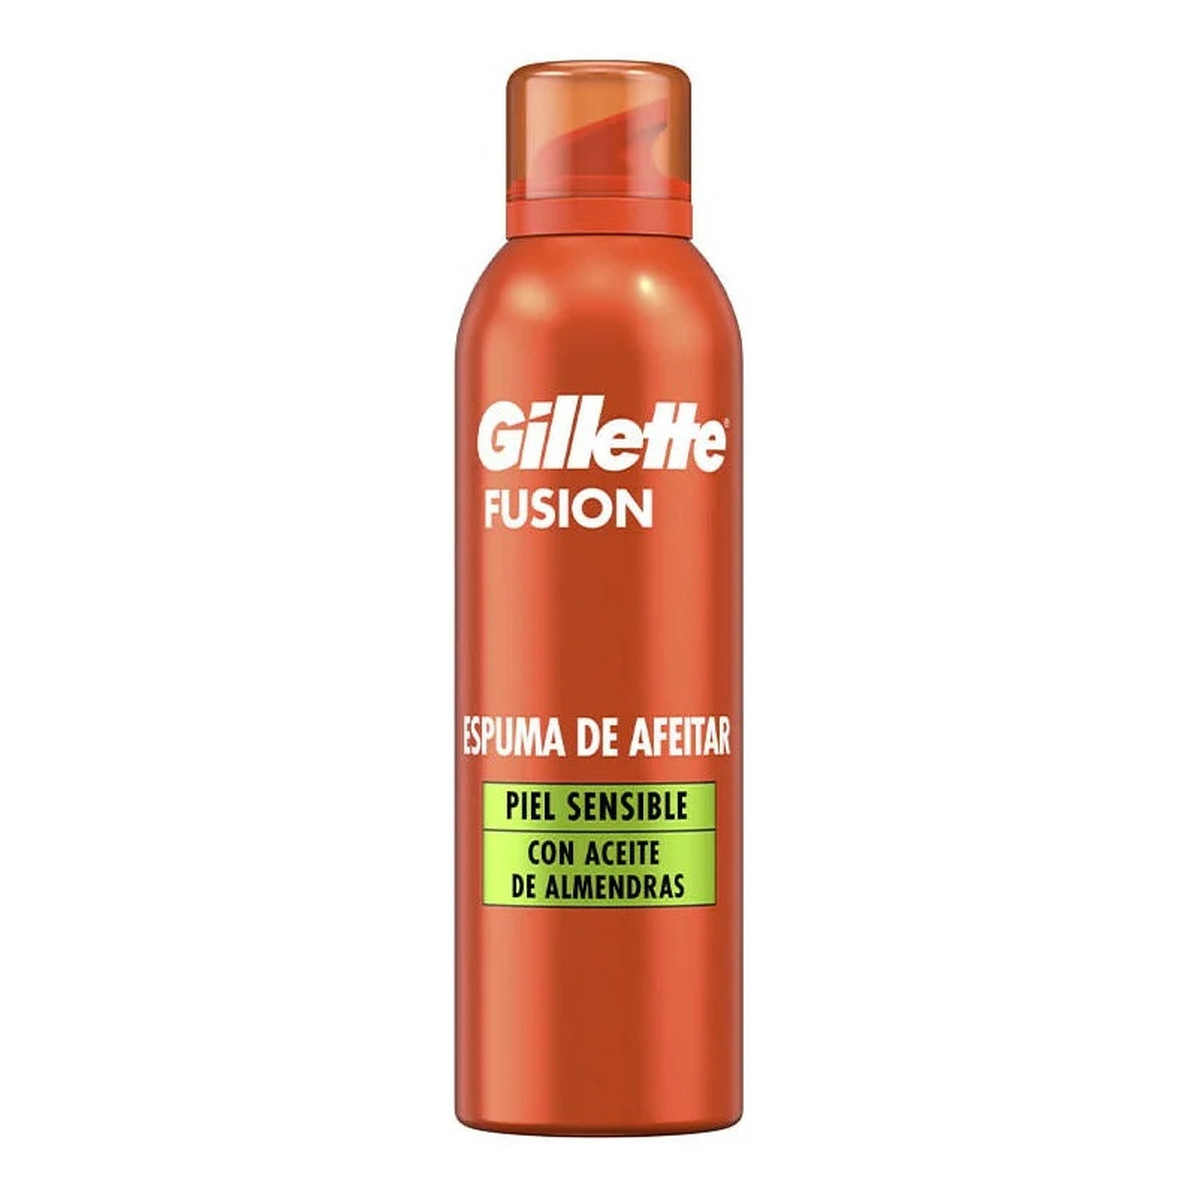 Gillette Fusion pianka do golenia dla skóry wrażliwej 250ml